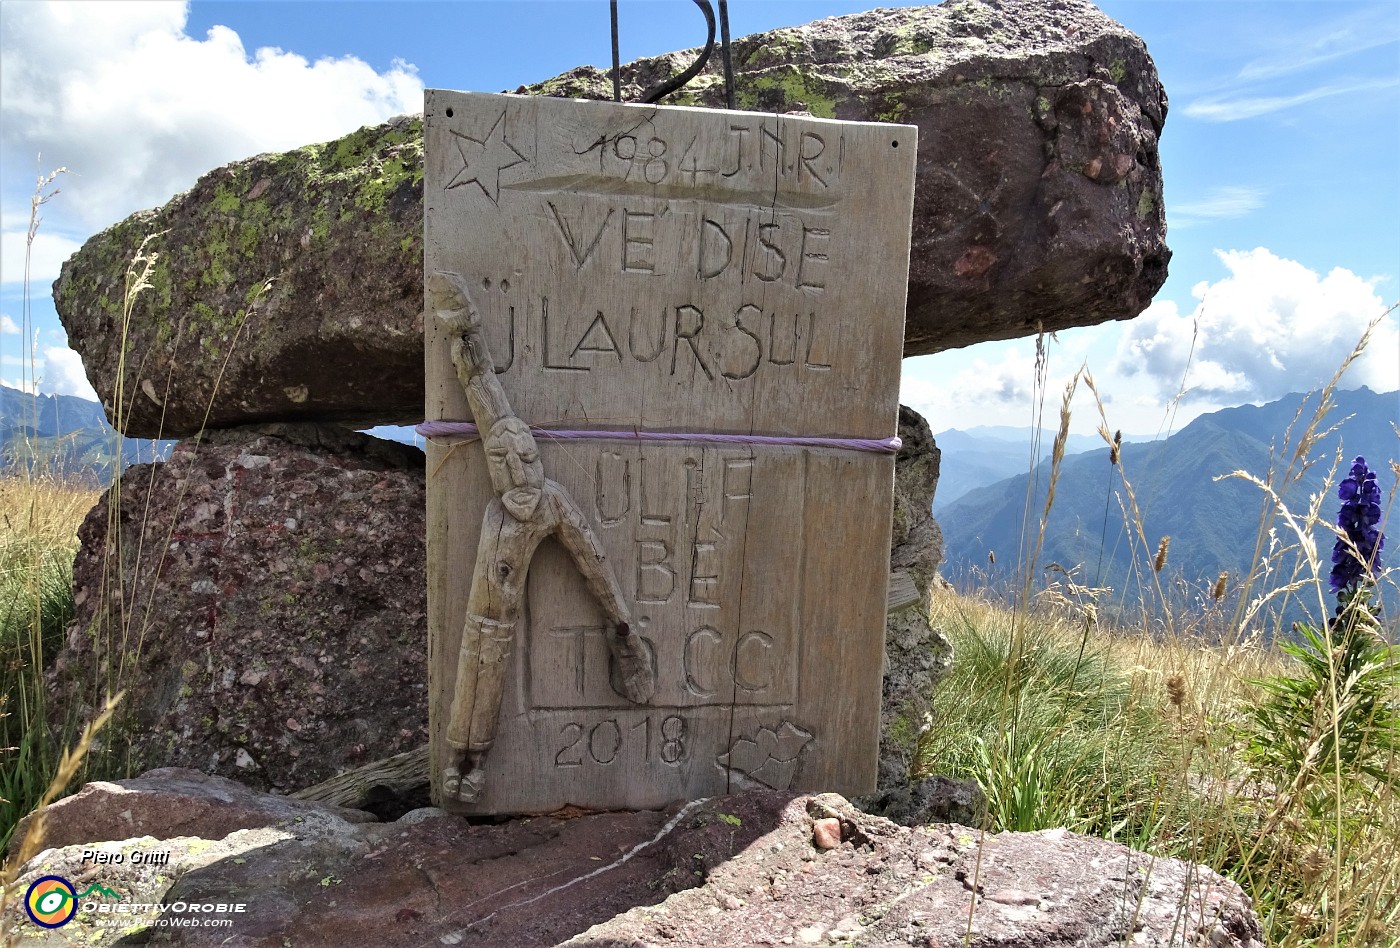 68All'altare in pietra messaggio inciso su tavoletta lignea .JPG